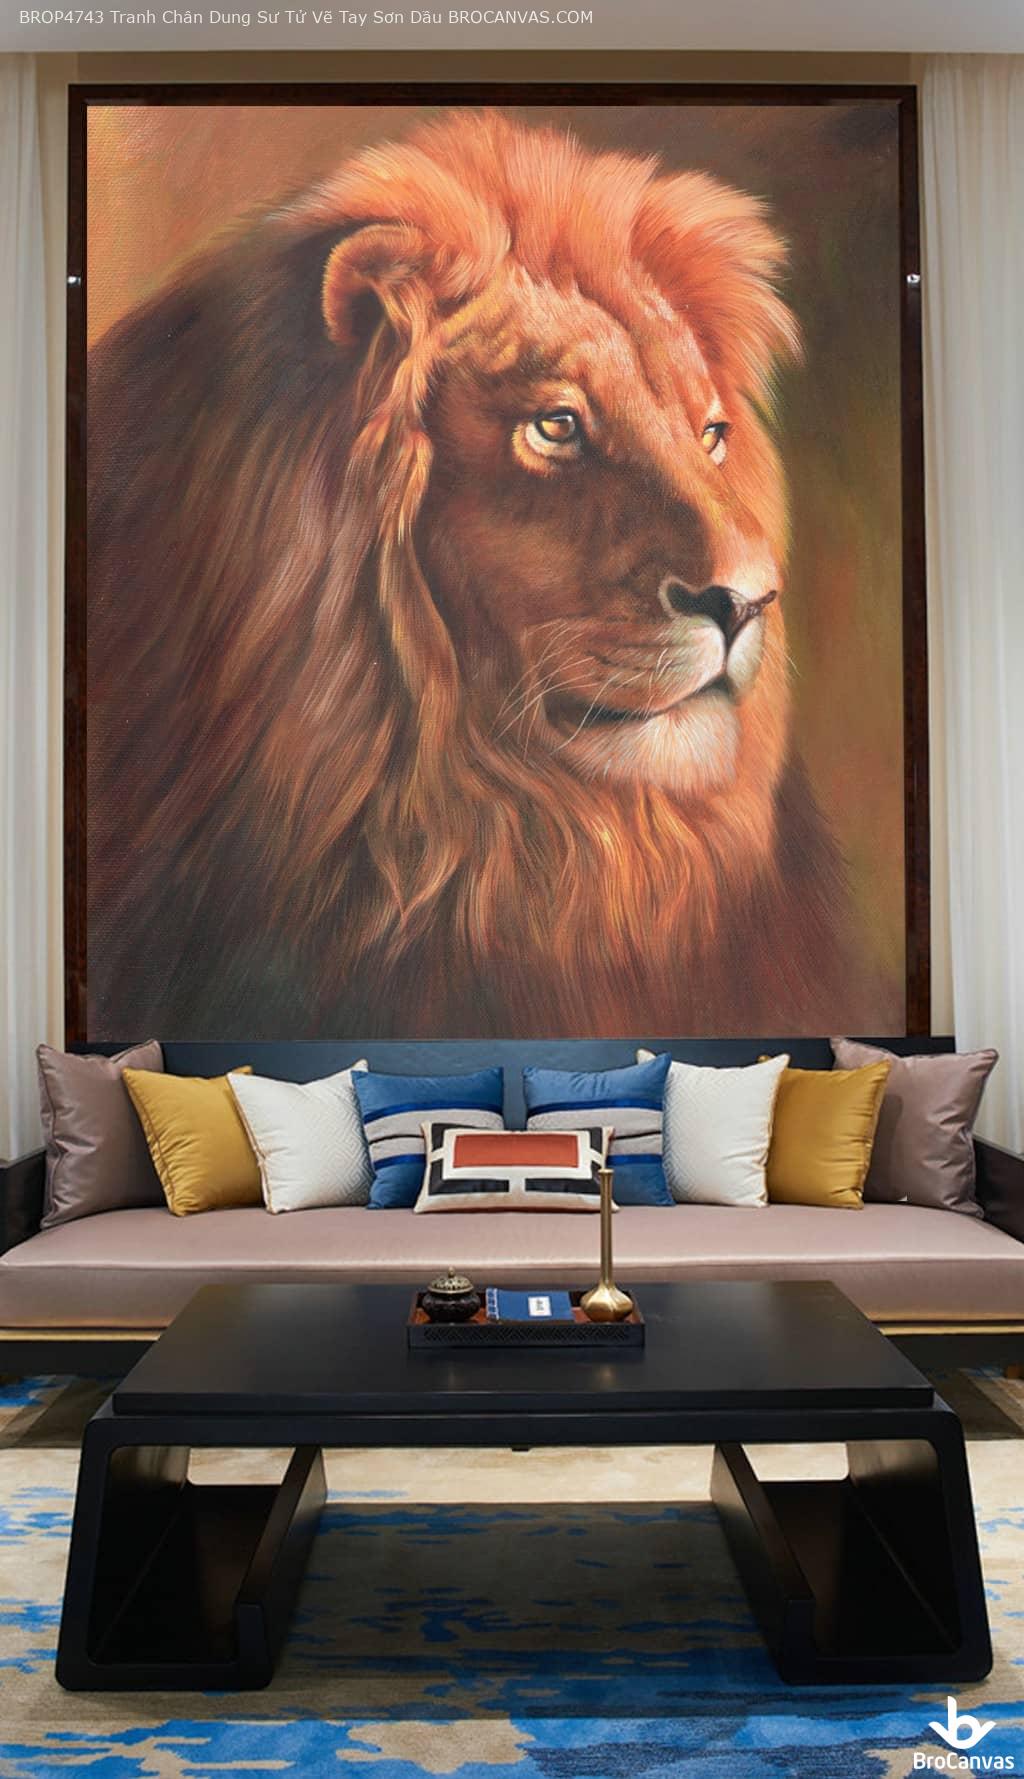 Brop4743 tranh chân dung sư tử vẽ tay sơn dầu